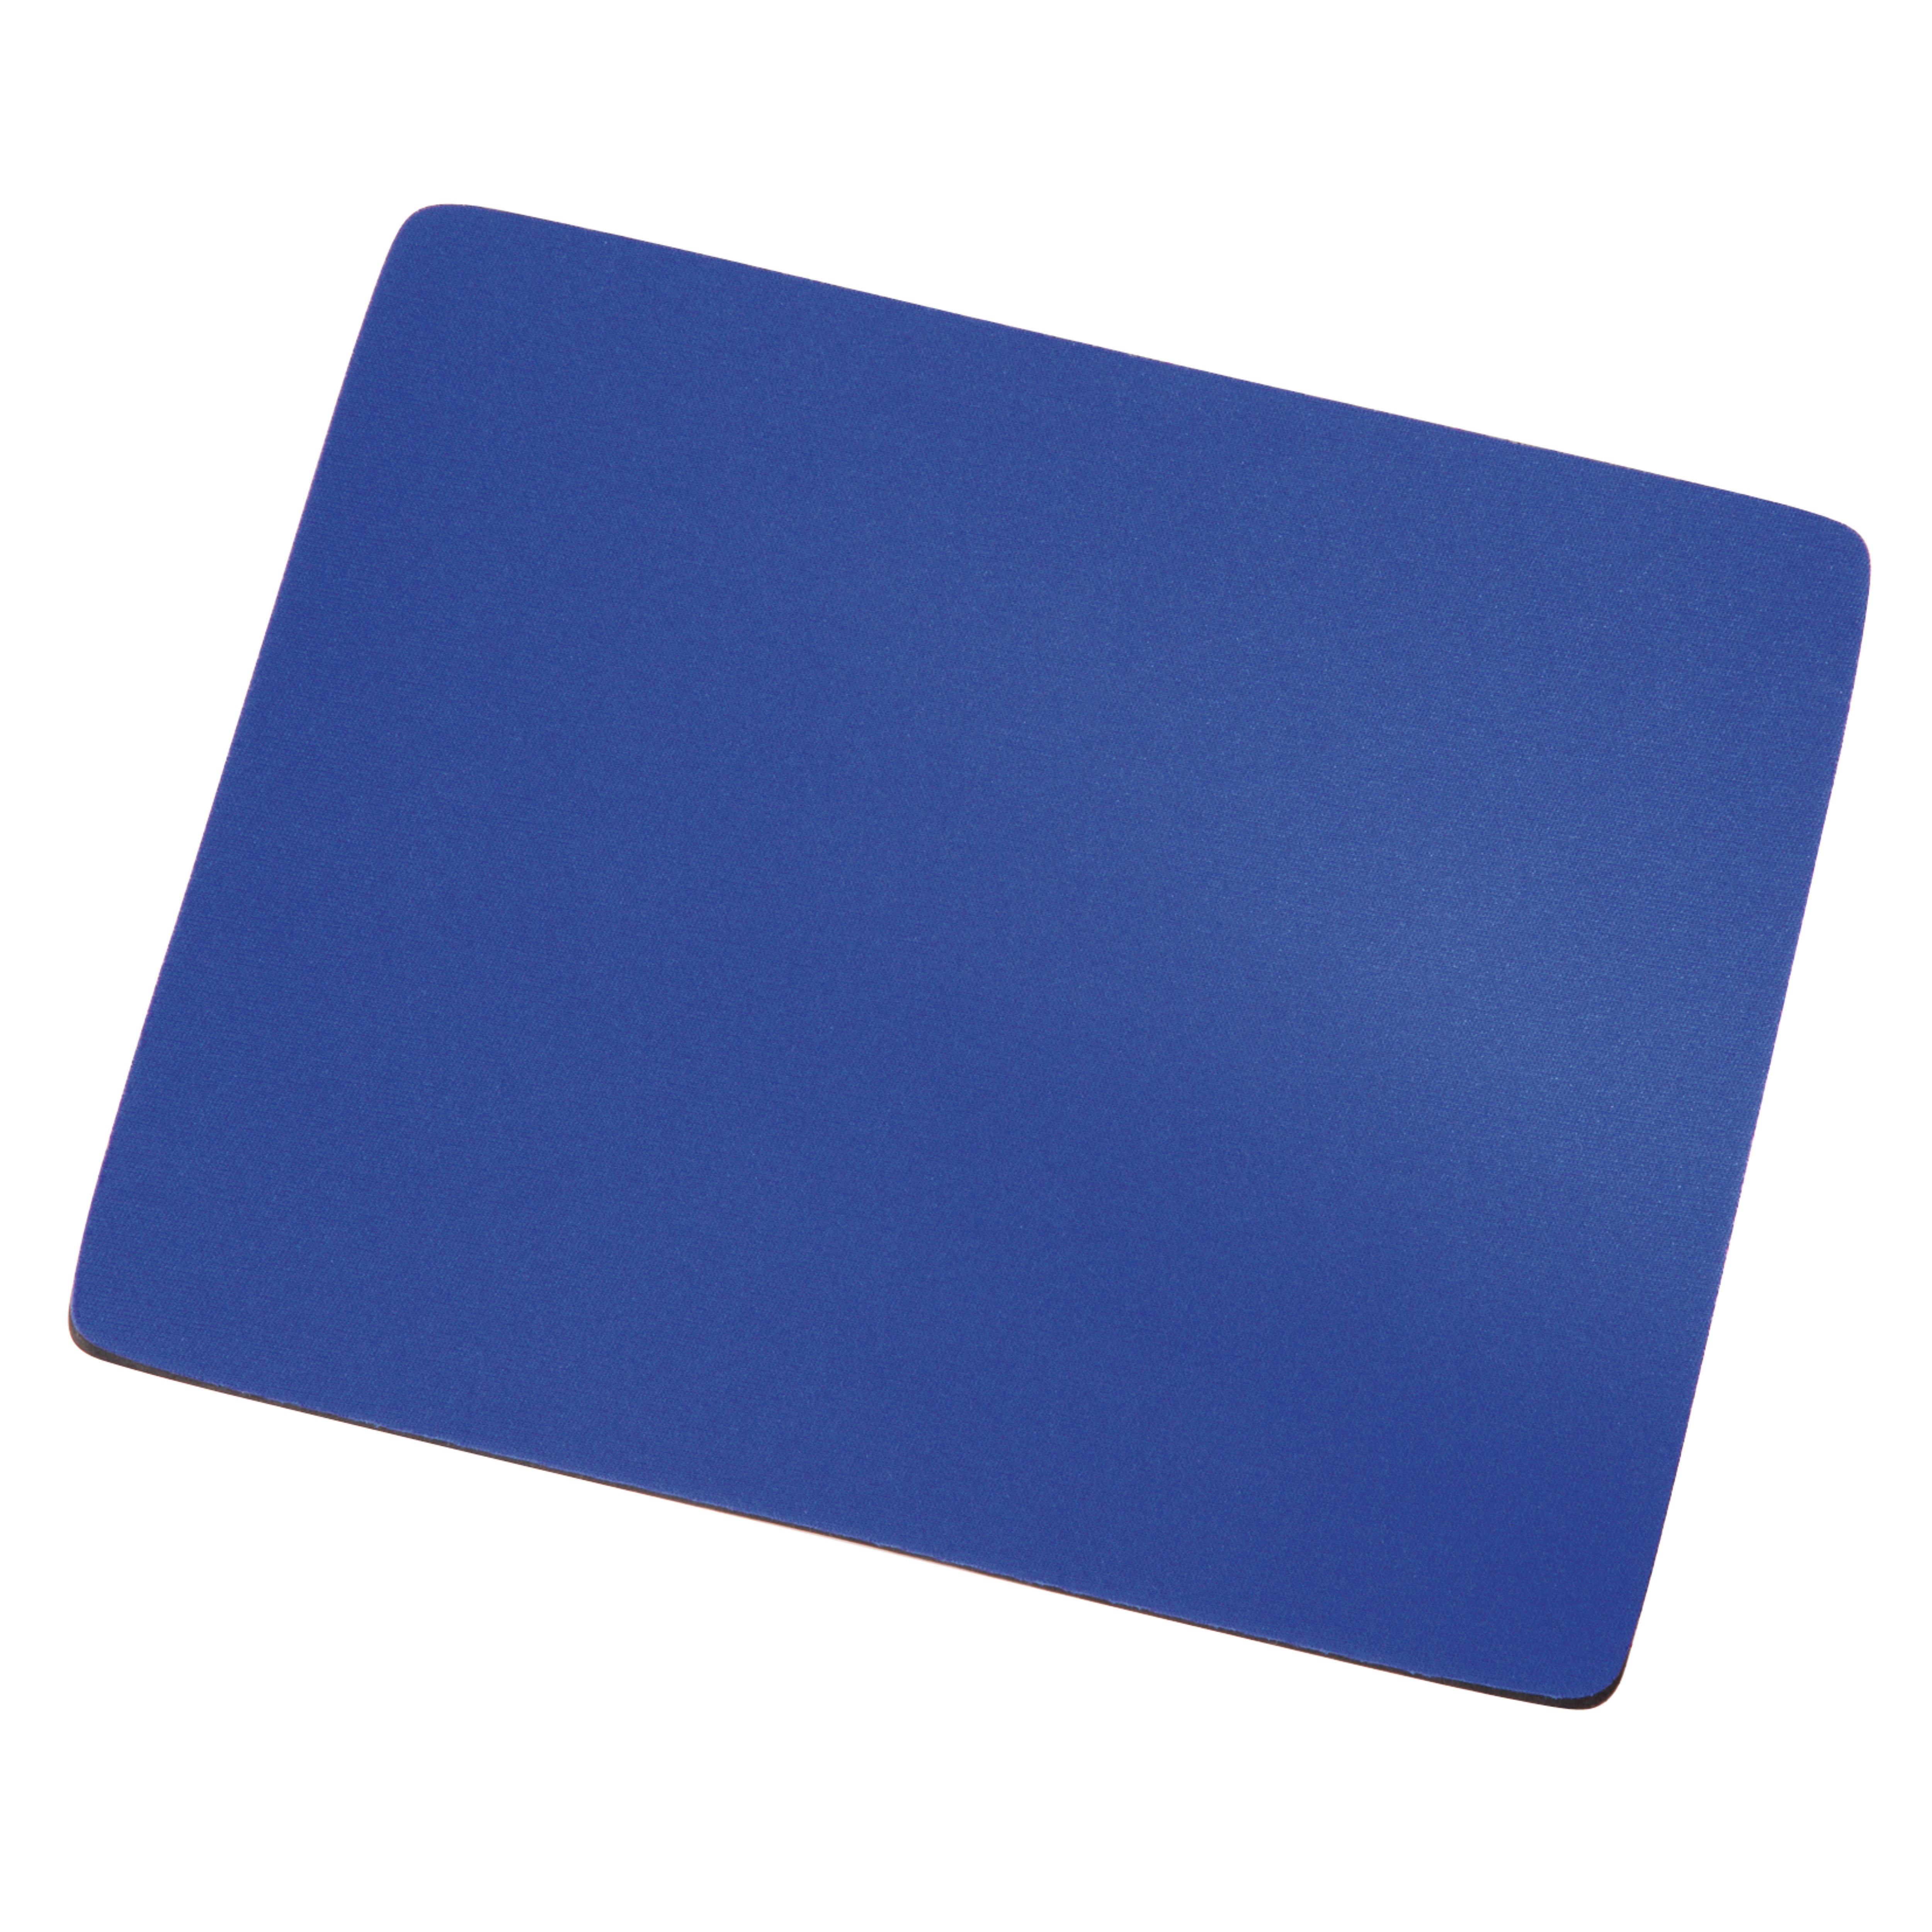 HAMA Mousepad 54768 blau